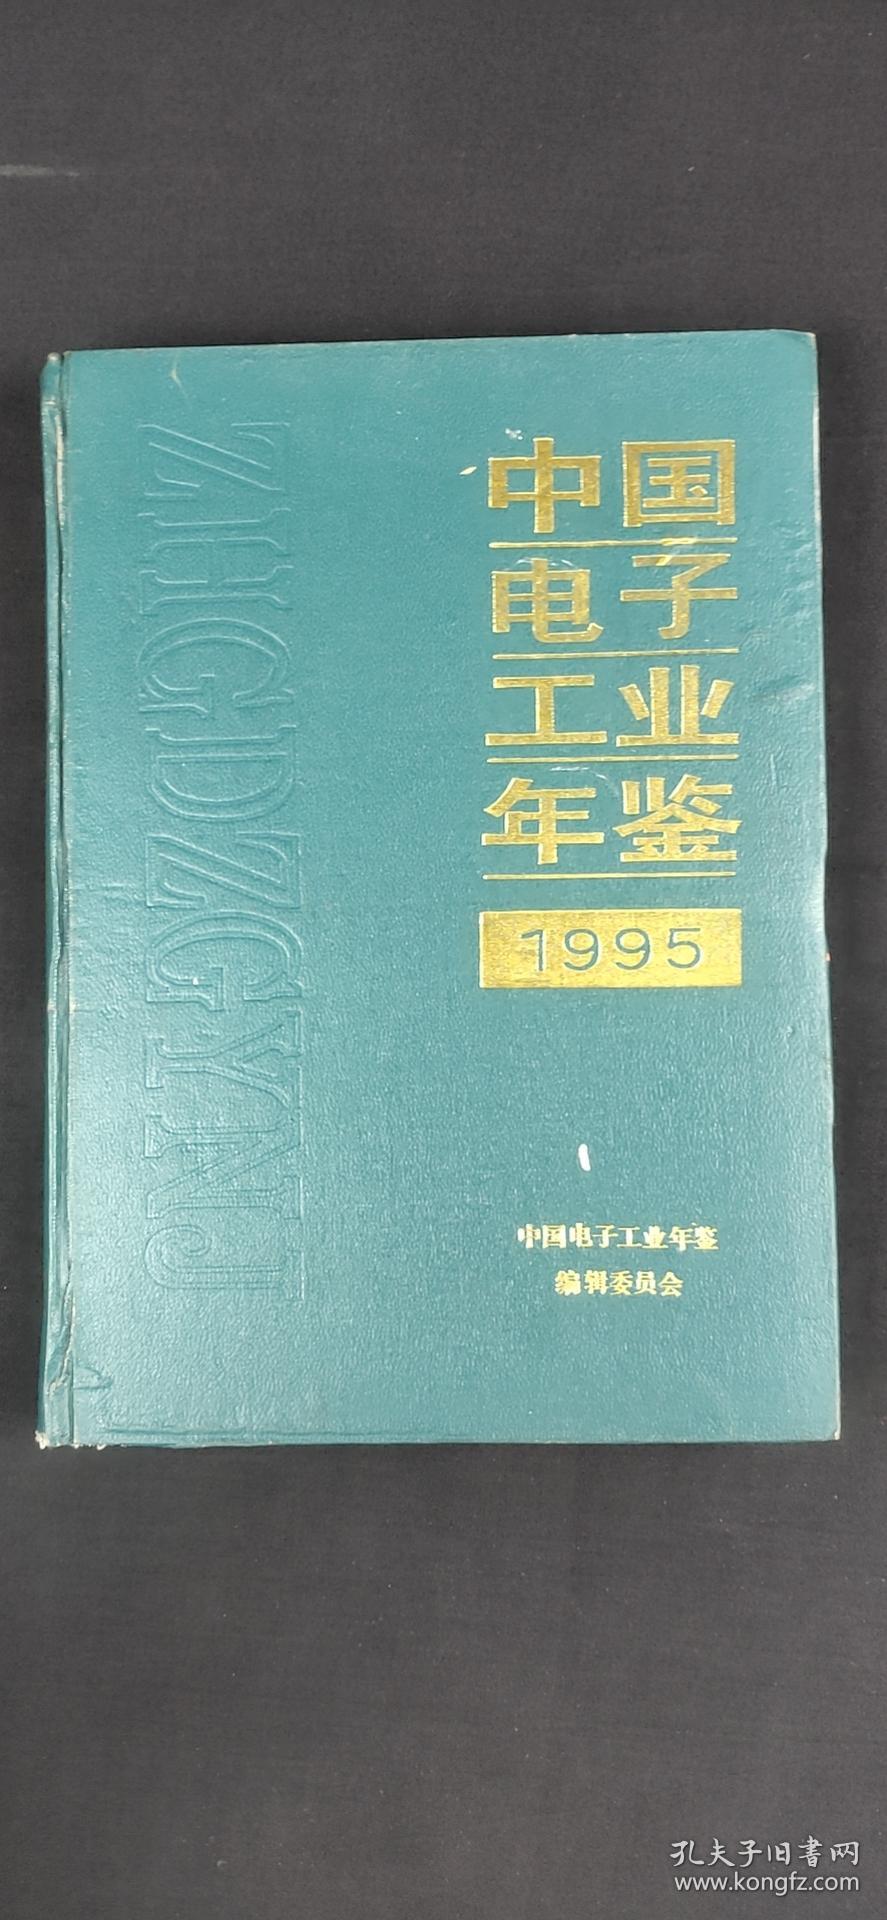 中國電子工業年鑒1955-.